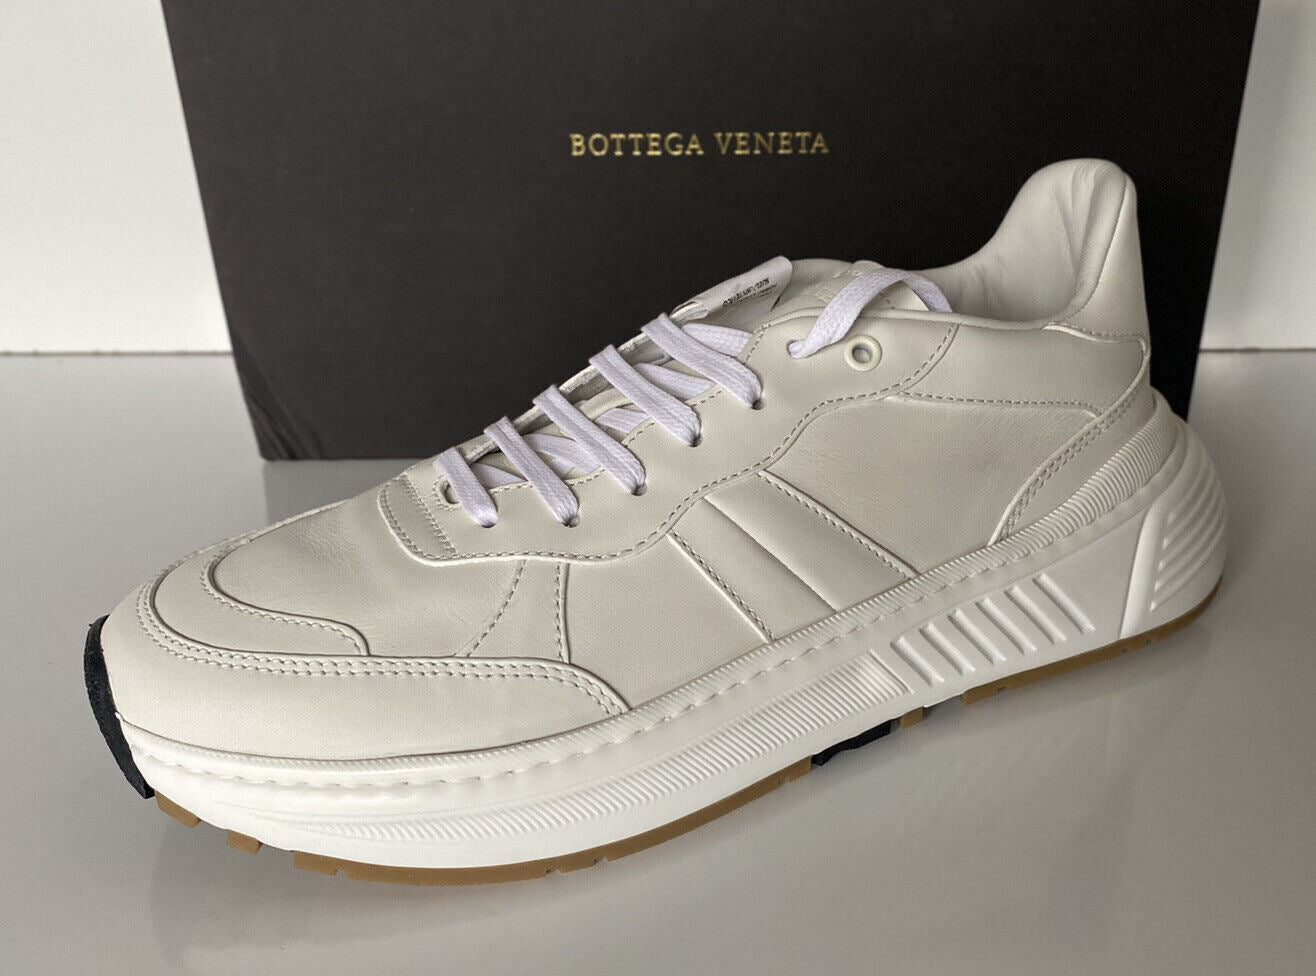 NIB $ 850 Bottega Veneta Herren-Sneakers aus weißem Kalbsleder 8,5 US 565646 9117 